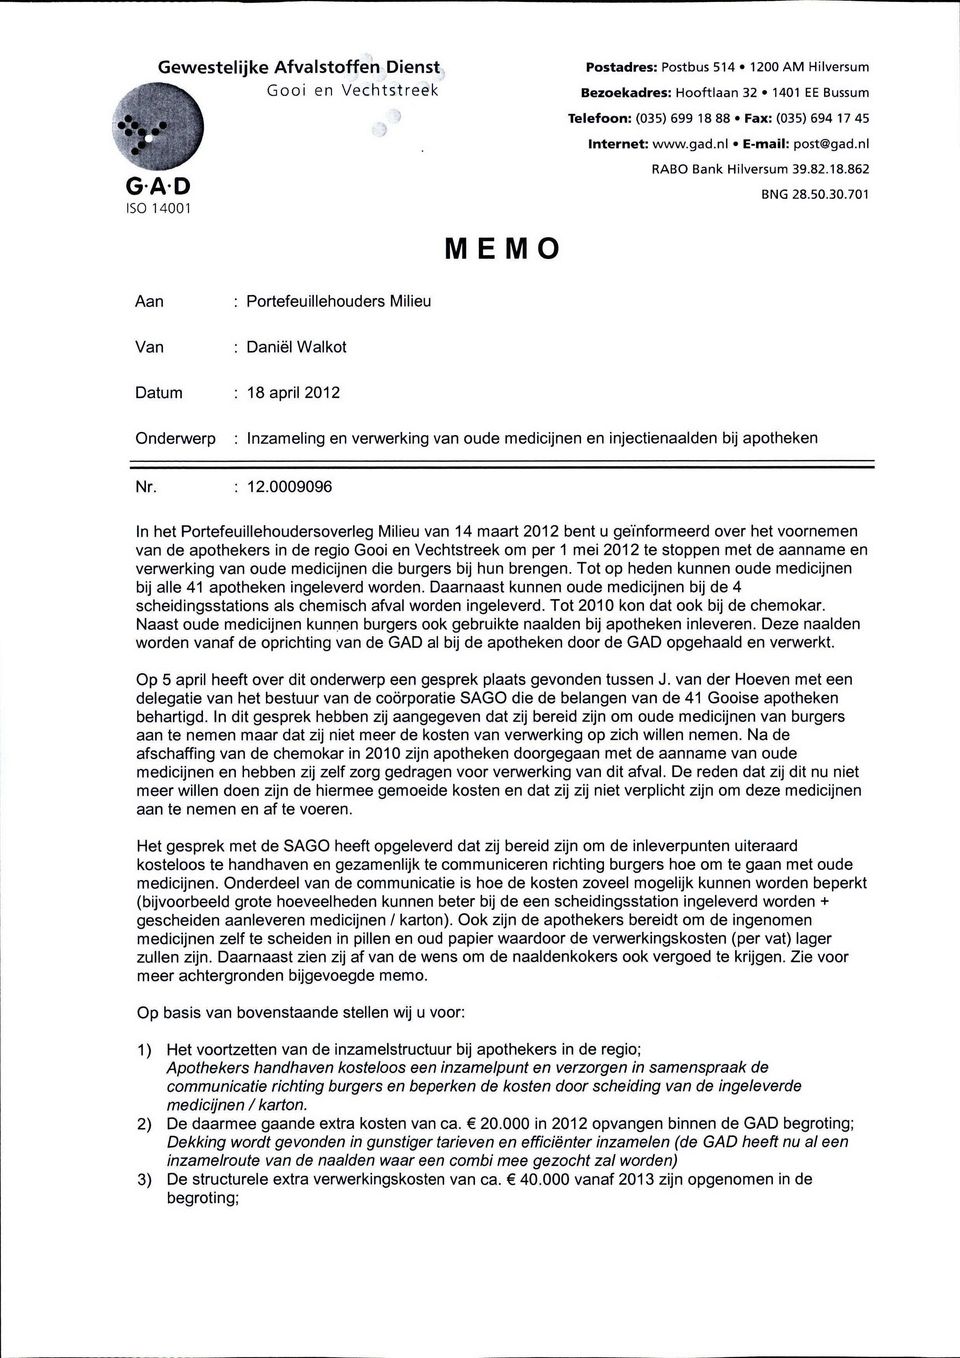 701 ISO 14001 MEMO Aan : Portefeuillehouders Milieu Van : Daniël Walkot Datum : 18 april 2012 Onderwerp : Inzameling en verwerking van oude medicijnen en injectienaalden bij apotheken Nr. : 12.